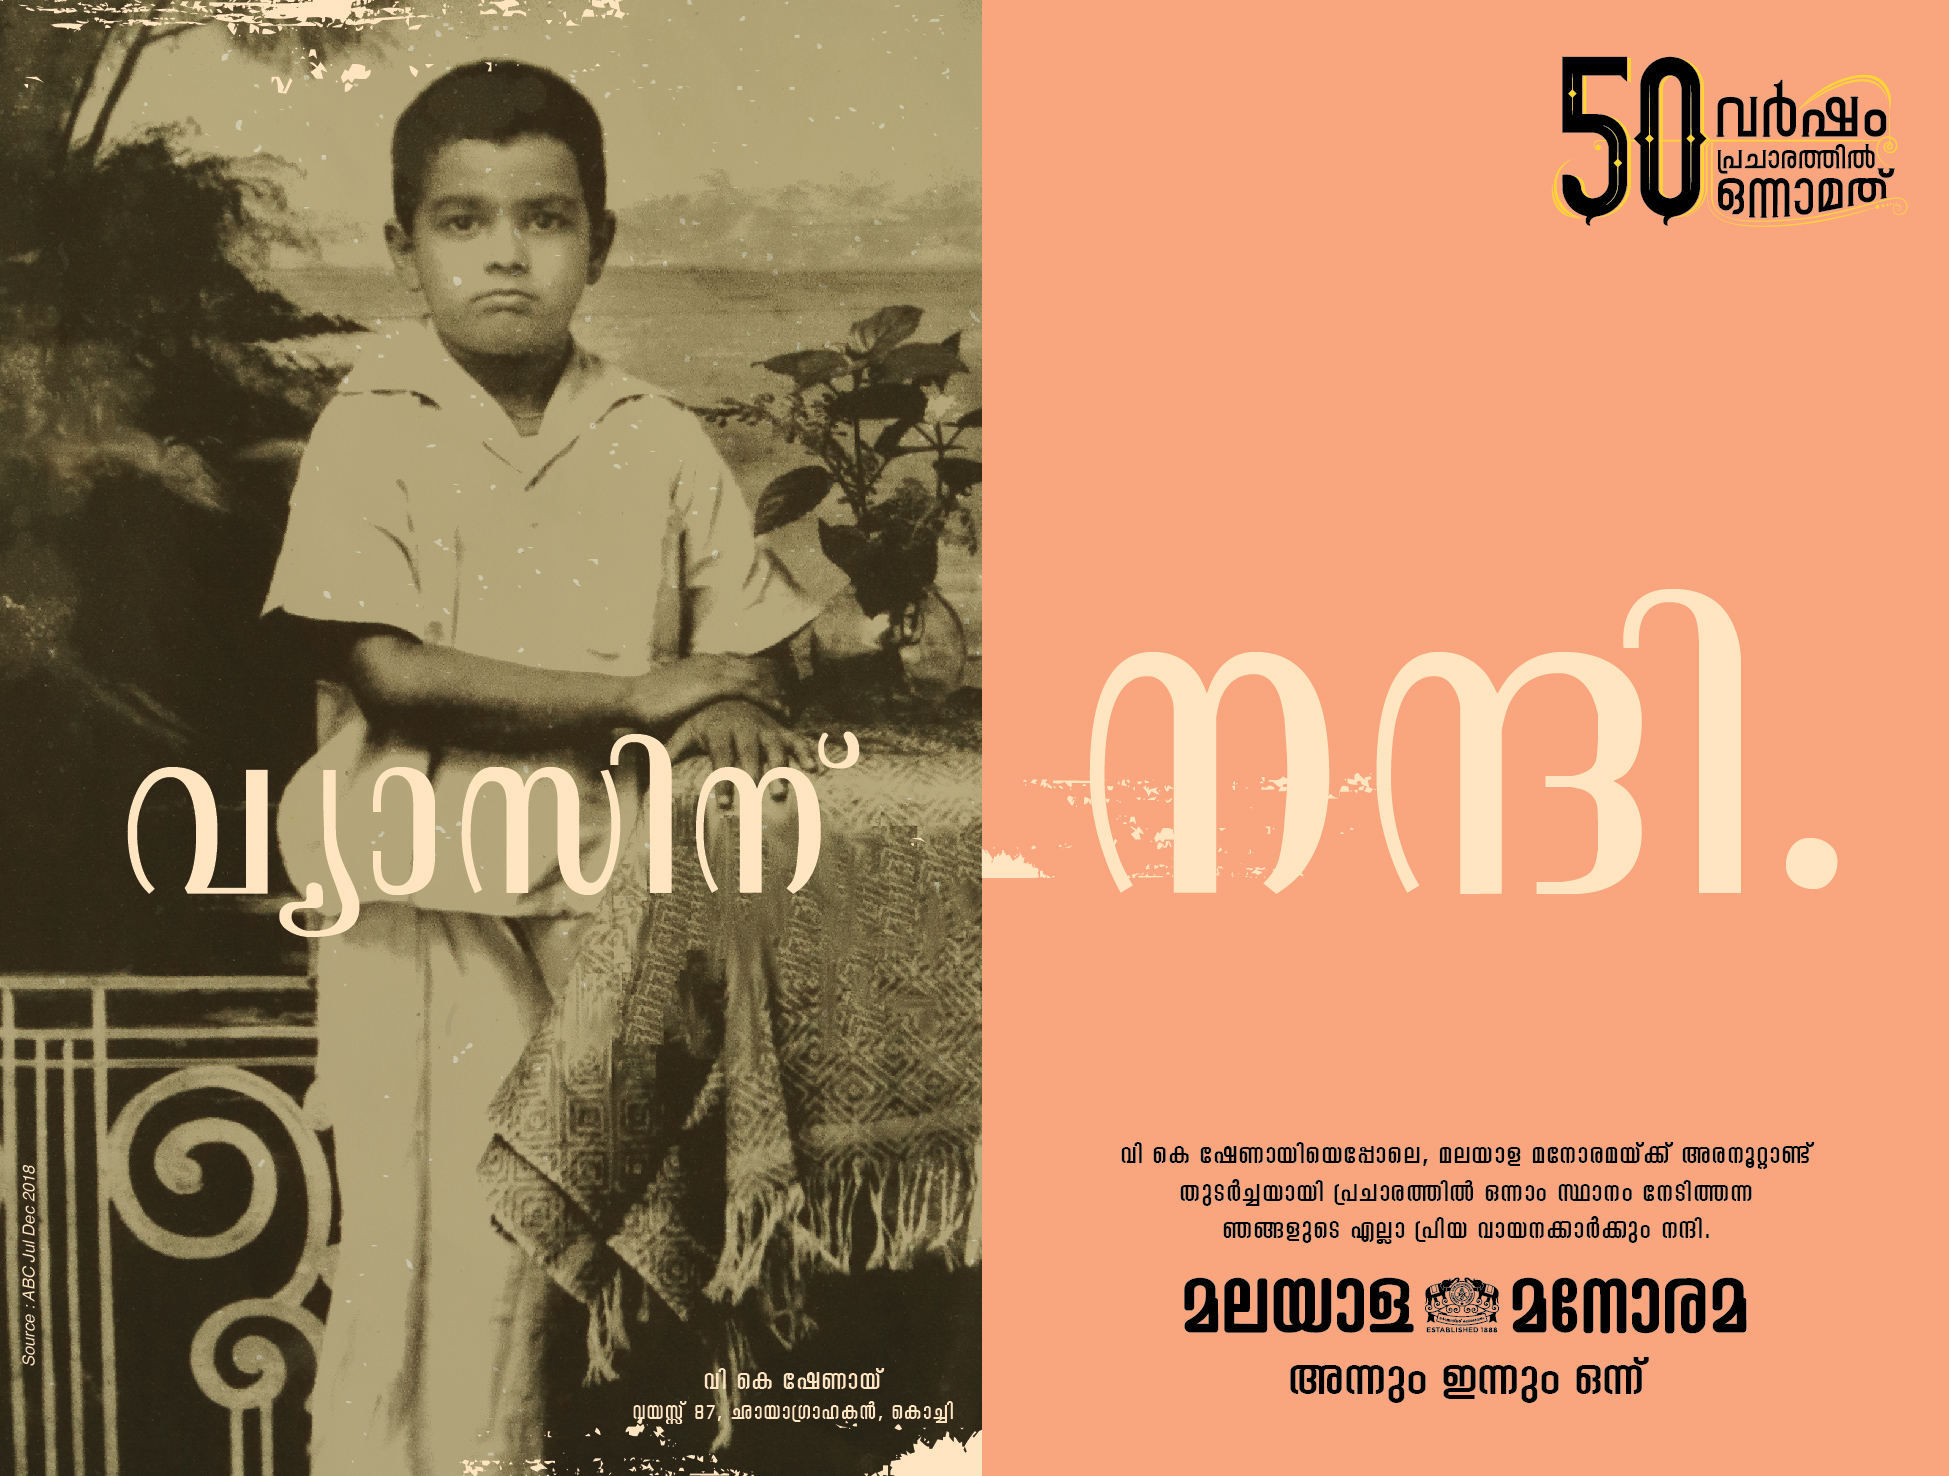 50 Years of Malayala Manorama | Print mock-up 1 by Stark Communications Pvt Ltd